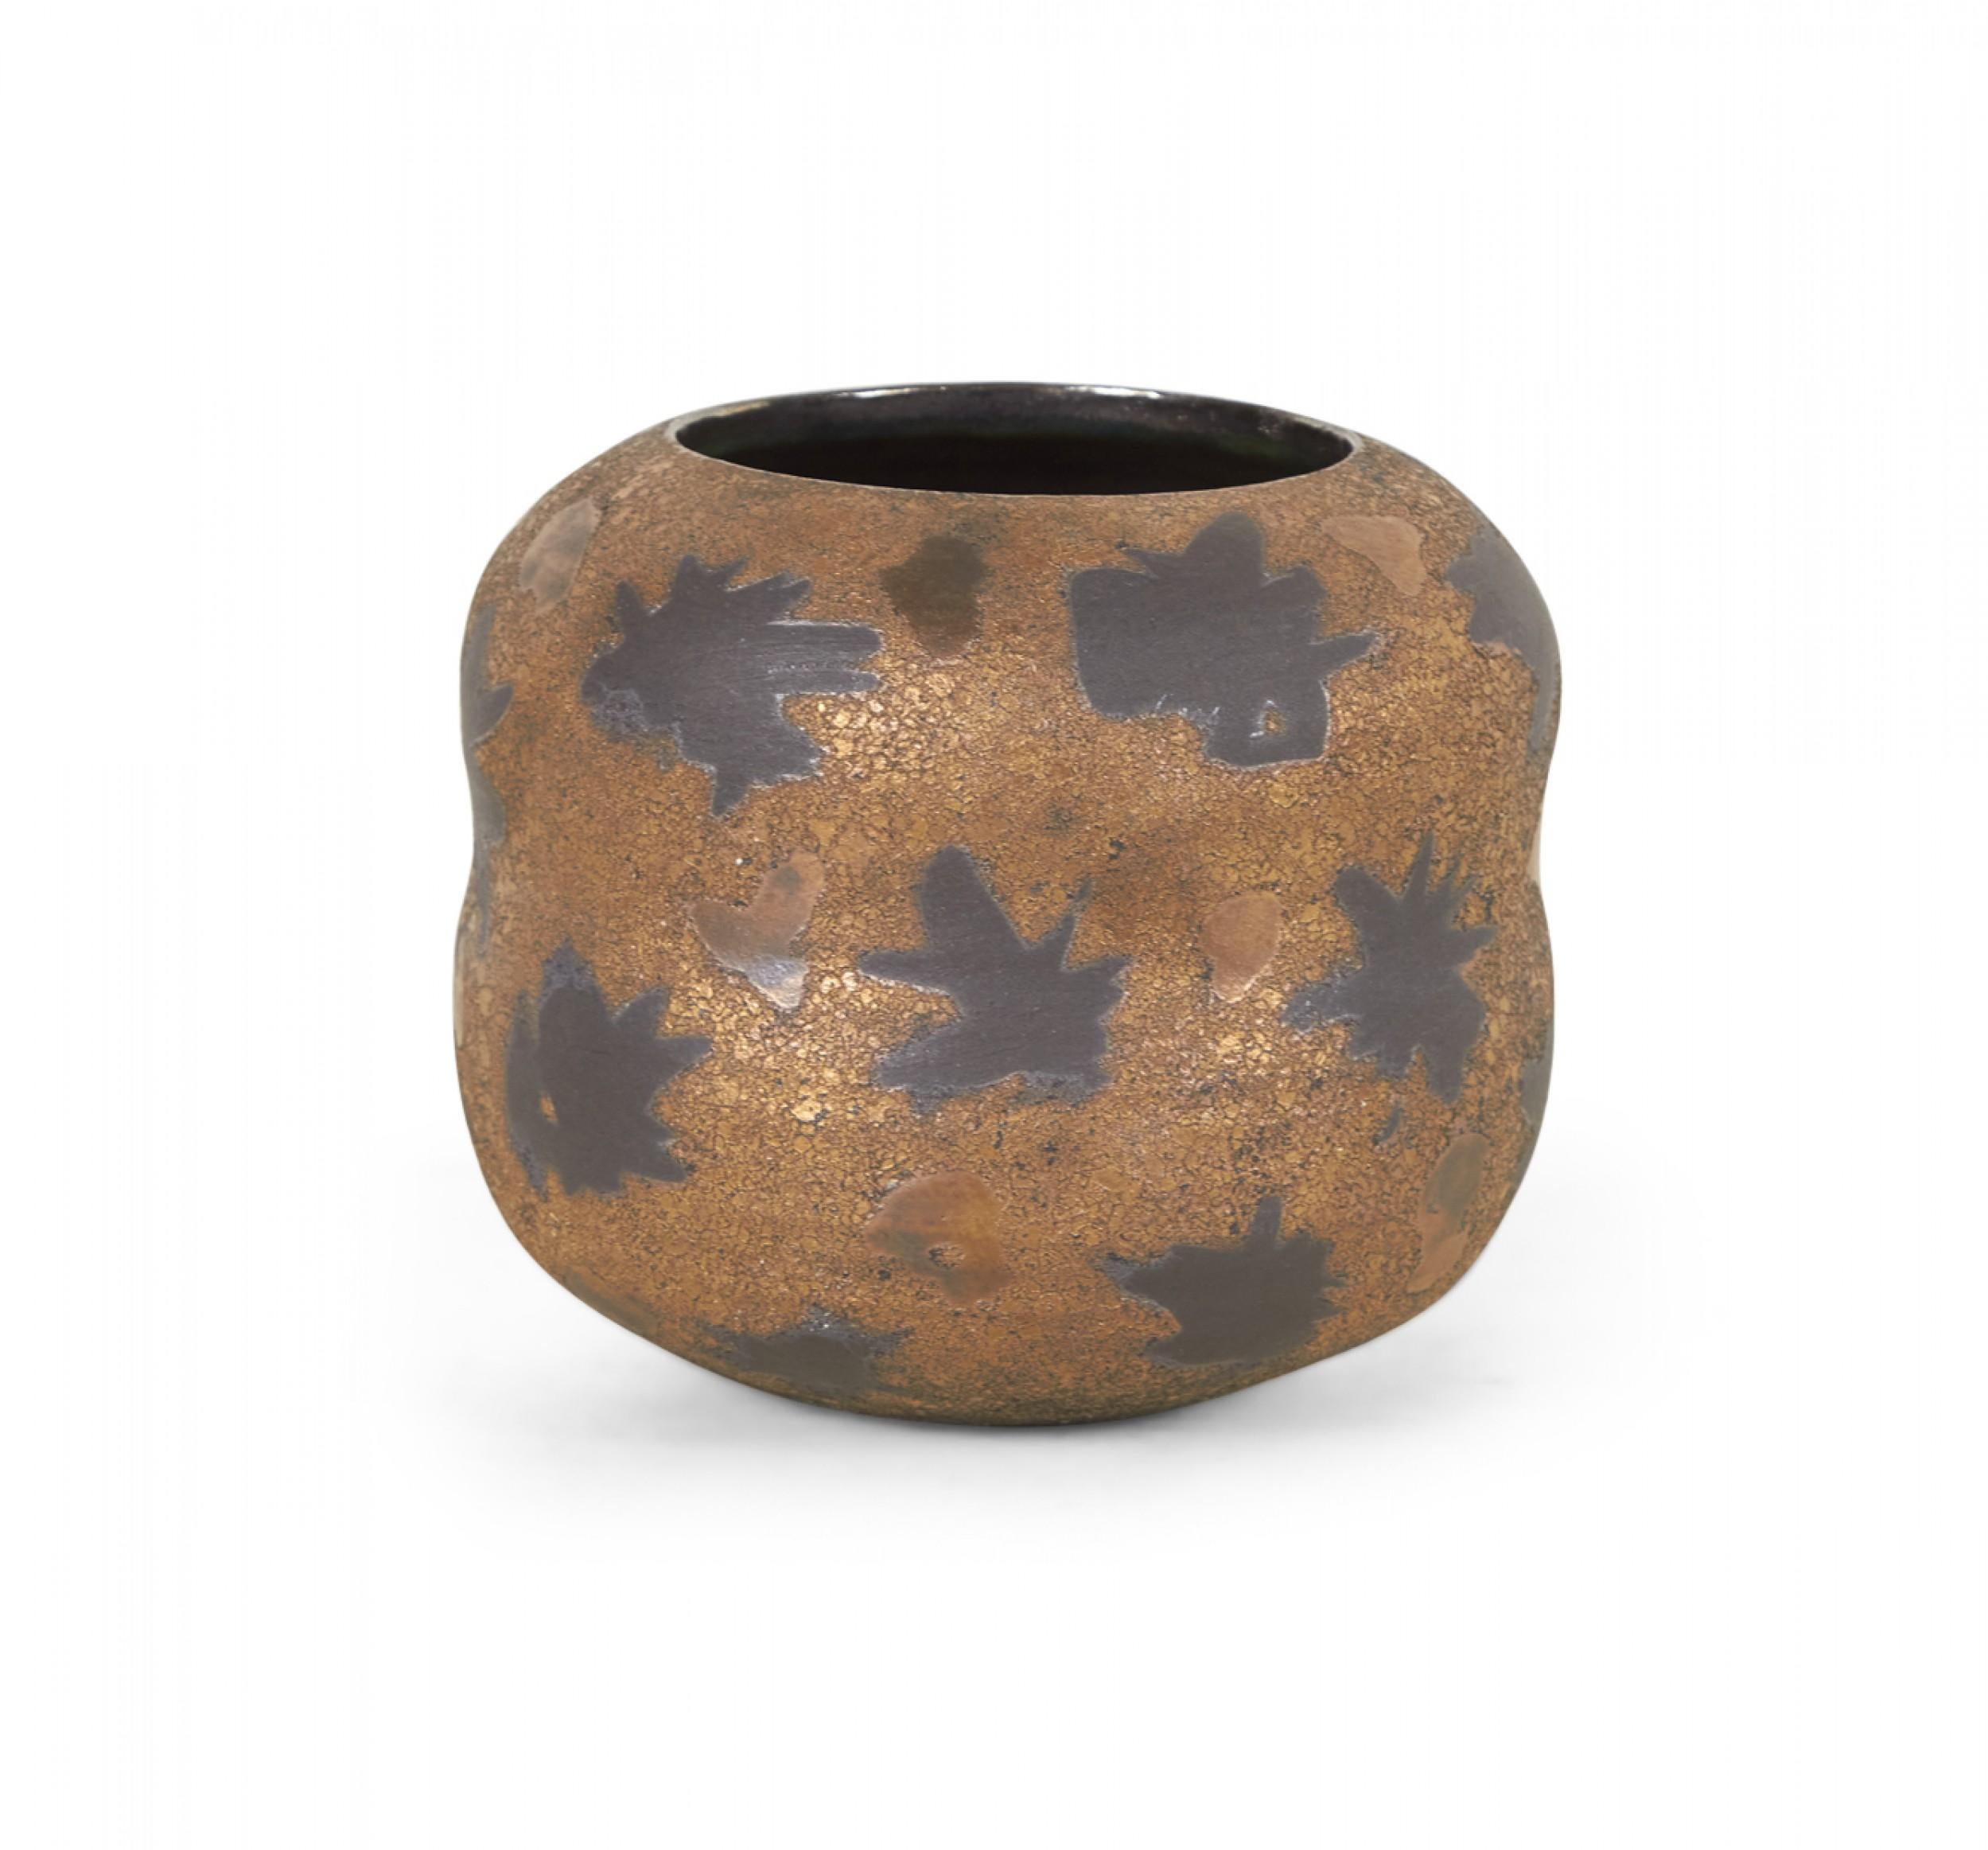 Zeitgenössische Vase aus gedrehtem Ton mit breiter, geschwungener Form und eingerückter Taille, abgerundeter Lippe und kreisförmiger Öffnung, mit schwarzem Sternenmuster auf bronzefarbener und schwarzer Glasur. (GARY DIPASQUALE).